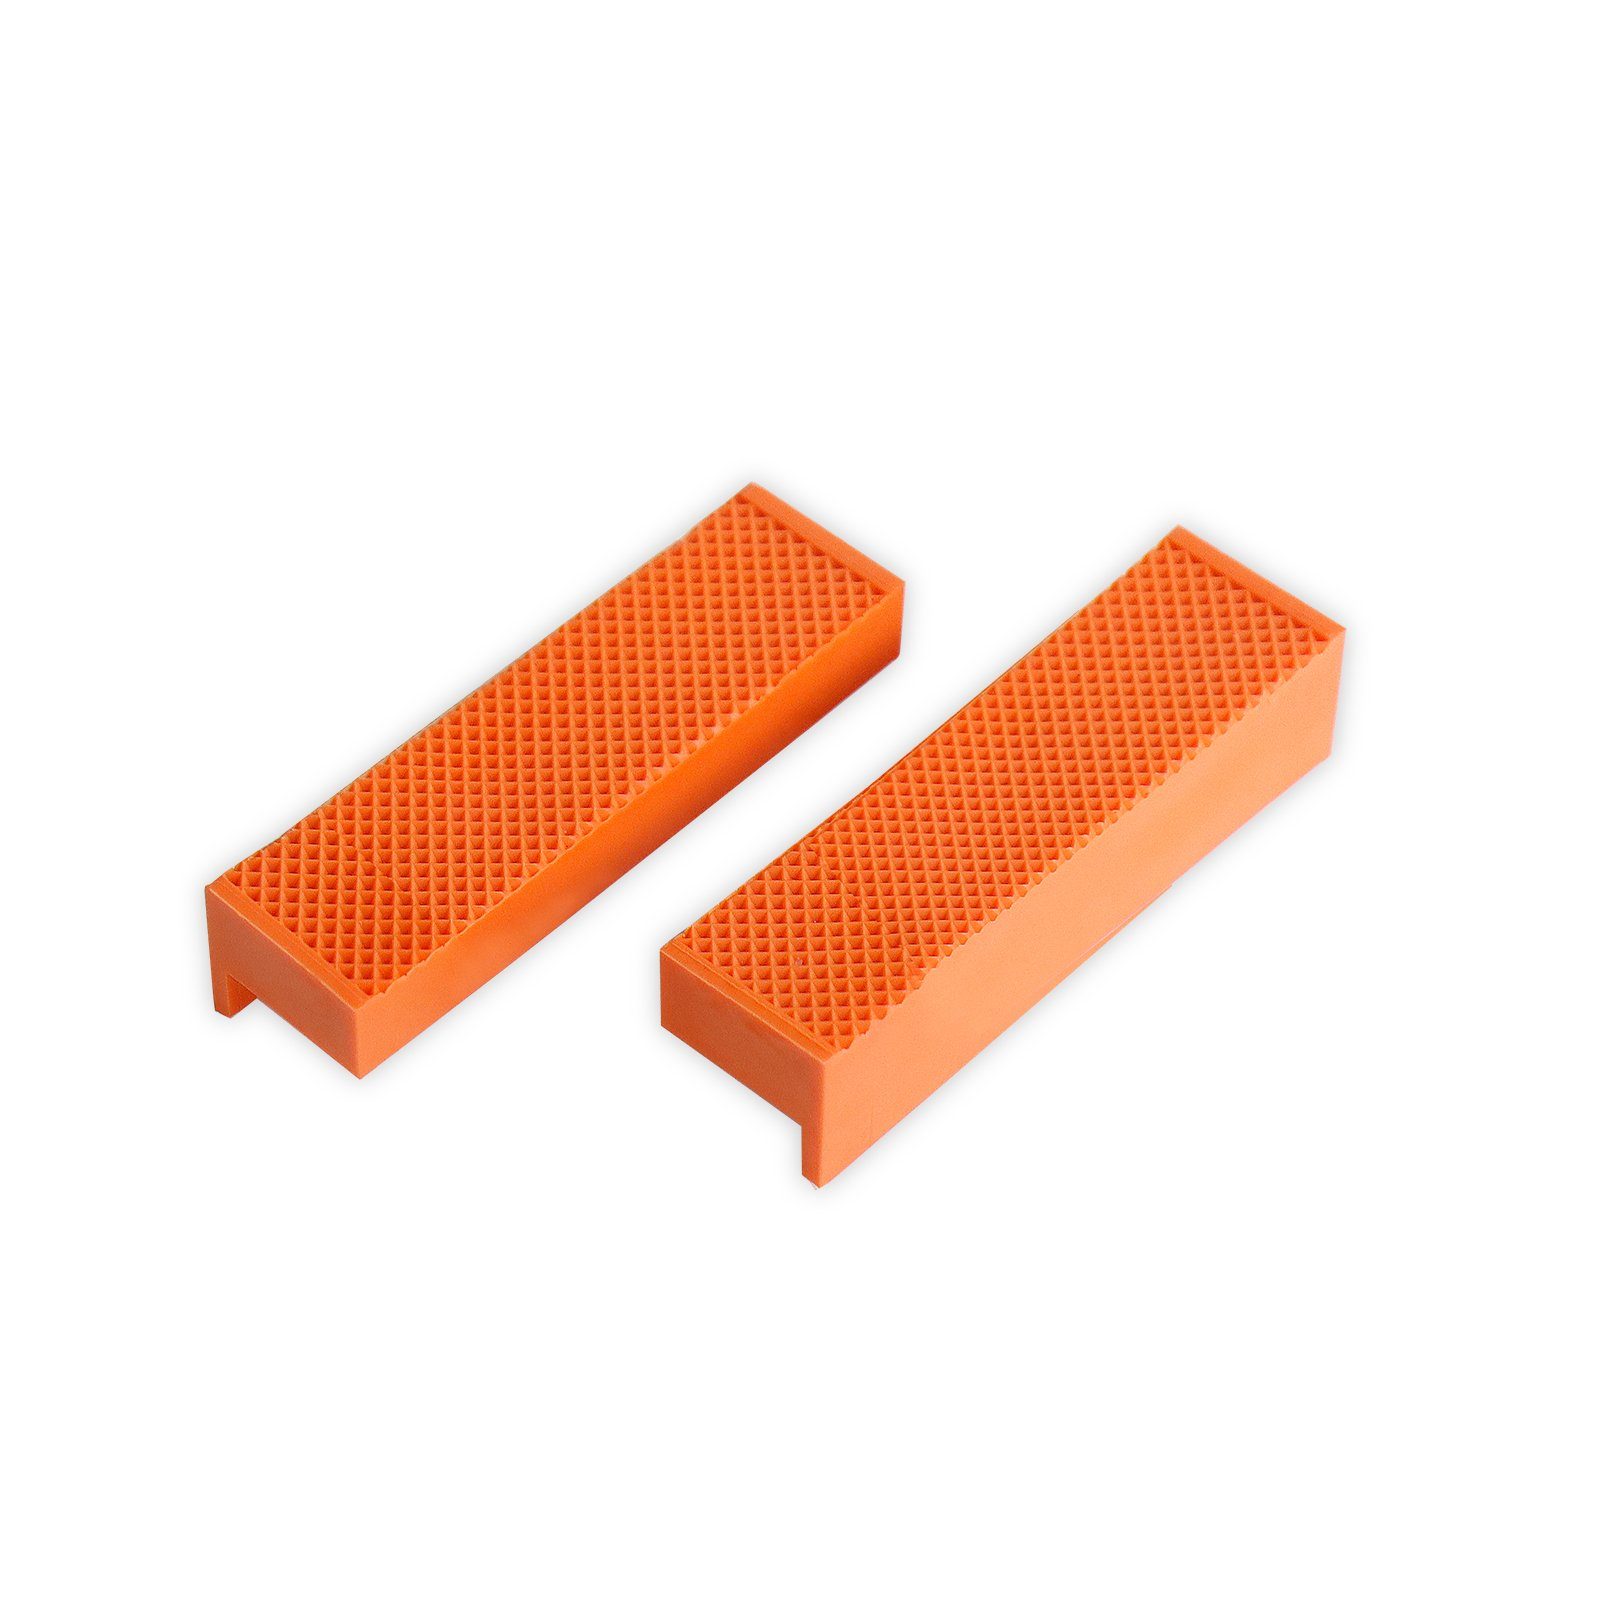 CCLIFE Schraubstock 2 tlg Schraubstock-Schutzbacken Breite 110mm / 150mm mit Magnet orange 110mm